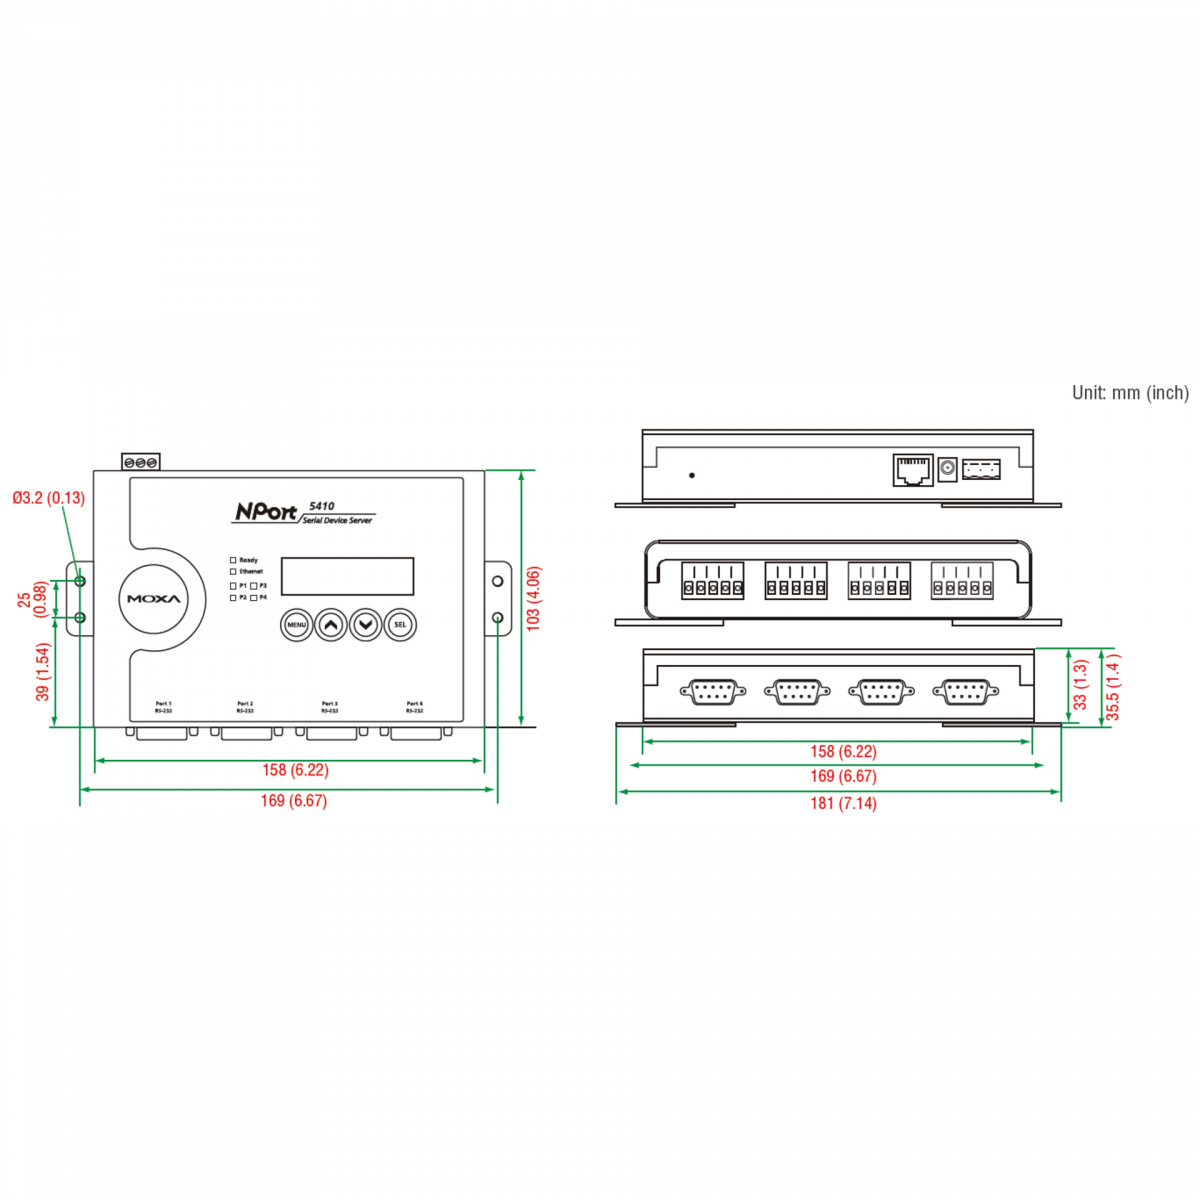 Nport 5410 4-портовый асинхронный сервер RS-232 в Ethernet MOXA